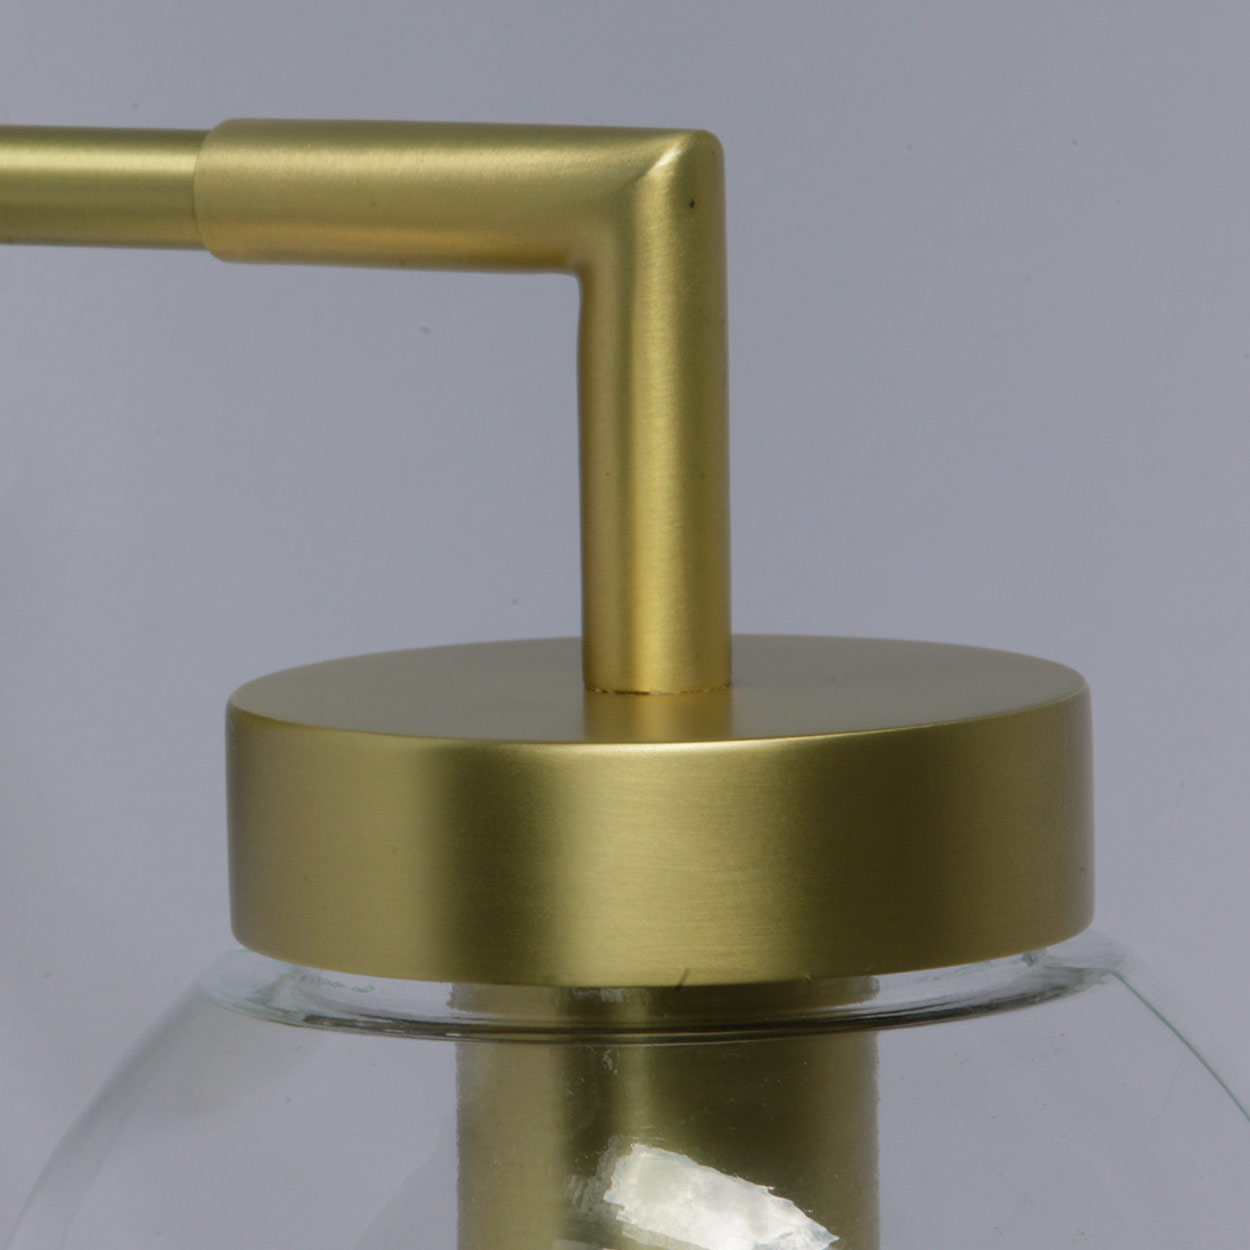 Badezimmer-Wandlampe mit Glaskugel, Ø 15 cm: Messing satiniert, klares Glas